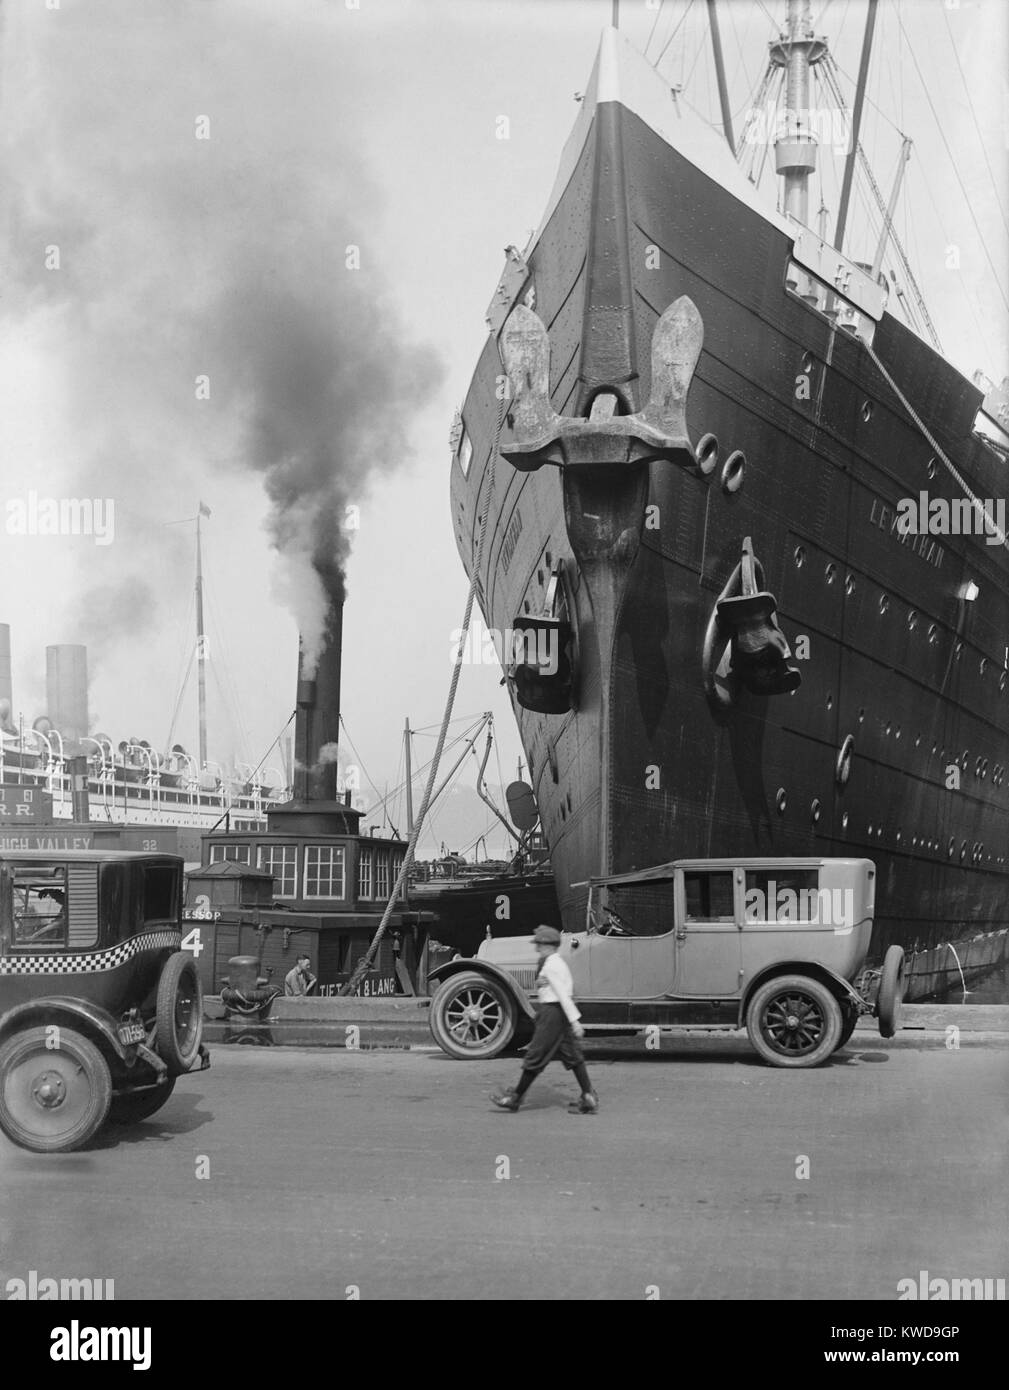 Der ozean Liner "Leviathan" an einem New York City Pier, C. 1920er-Jahre. Sie war ursprünglich die deutsche Fahne Passagierschiff 'Vaterland', wurde aber als Troop Transport von April 1917-1919 beschlagnahmt. Sie blieb in politischen Schwebezustand von 1919 bis 1922, als sie in die größte und schnellste Schiff der US-Handelsmarine modernisiert (BSLOC 2016 10 182) Stockfoto